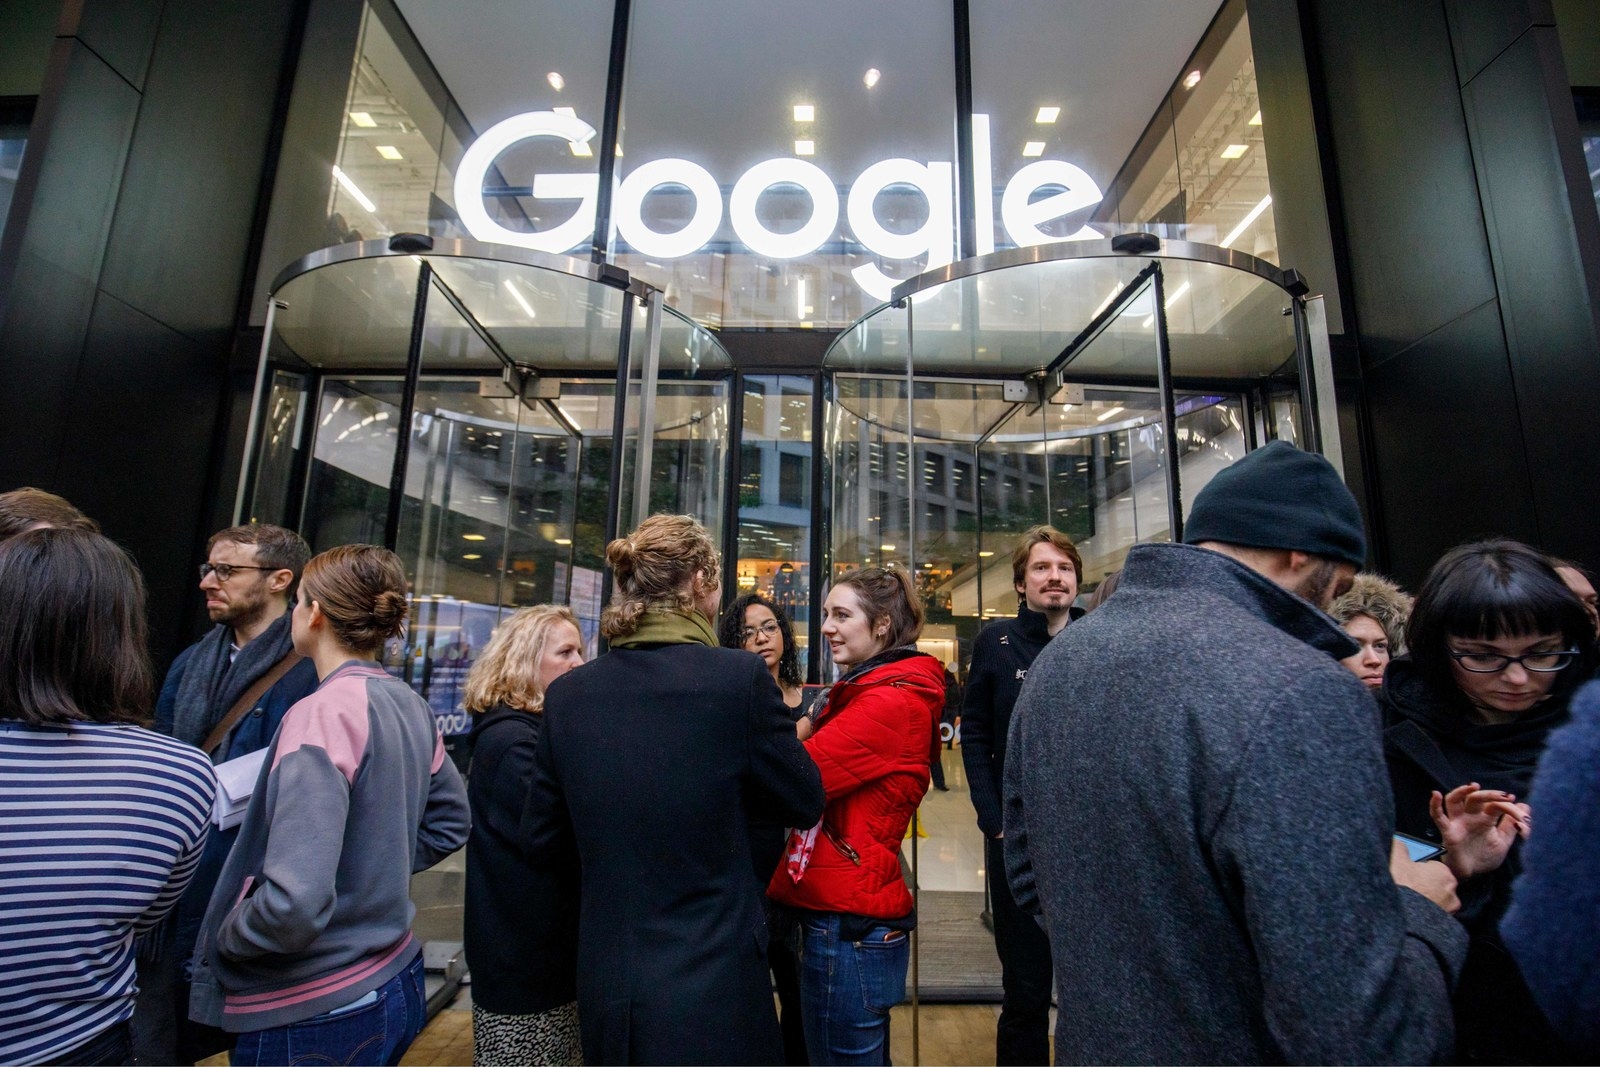 พนักงาน Google ทั่วโลก “ประท้วงหยุดงาน” เหตุบริษัทปกป้องผู้ถูกกล่าวหาคุกคามทางเพศ